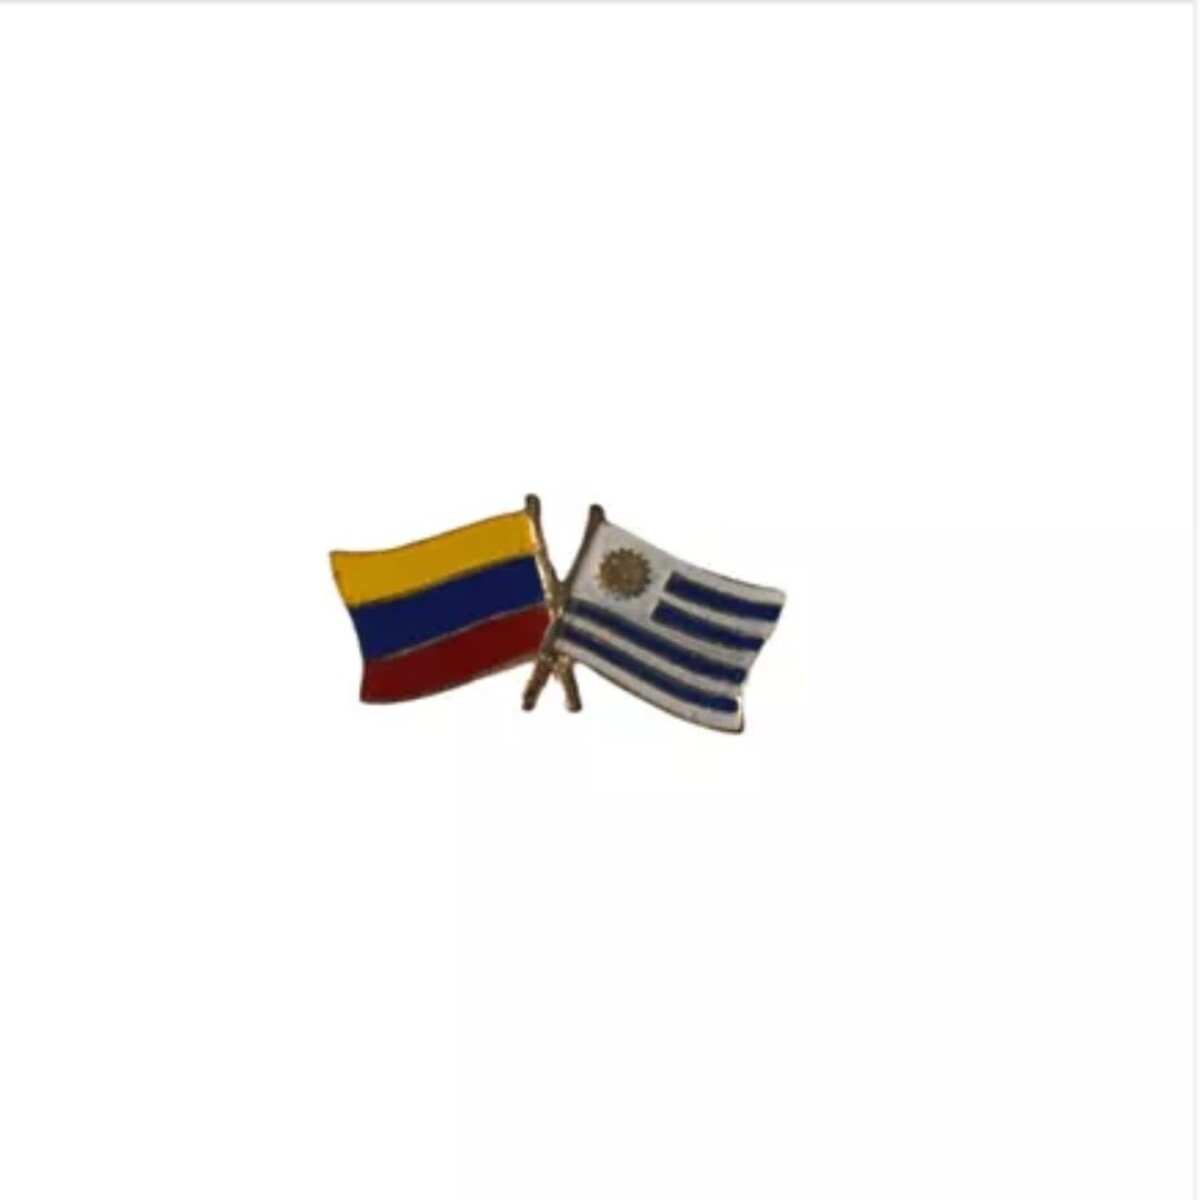 Pin metálico banderas - Colombia y Uruguay 